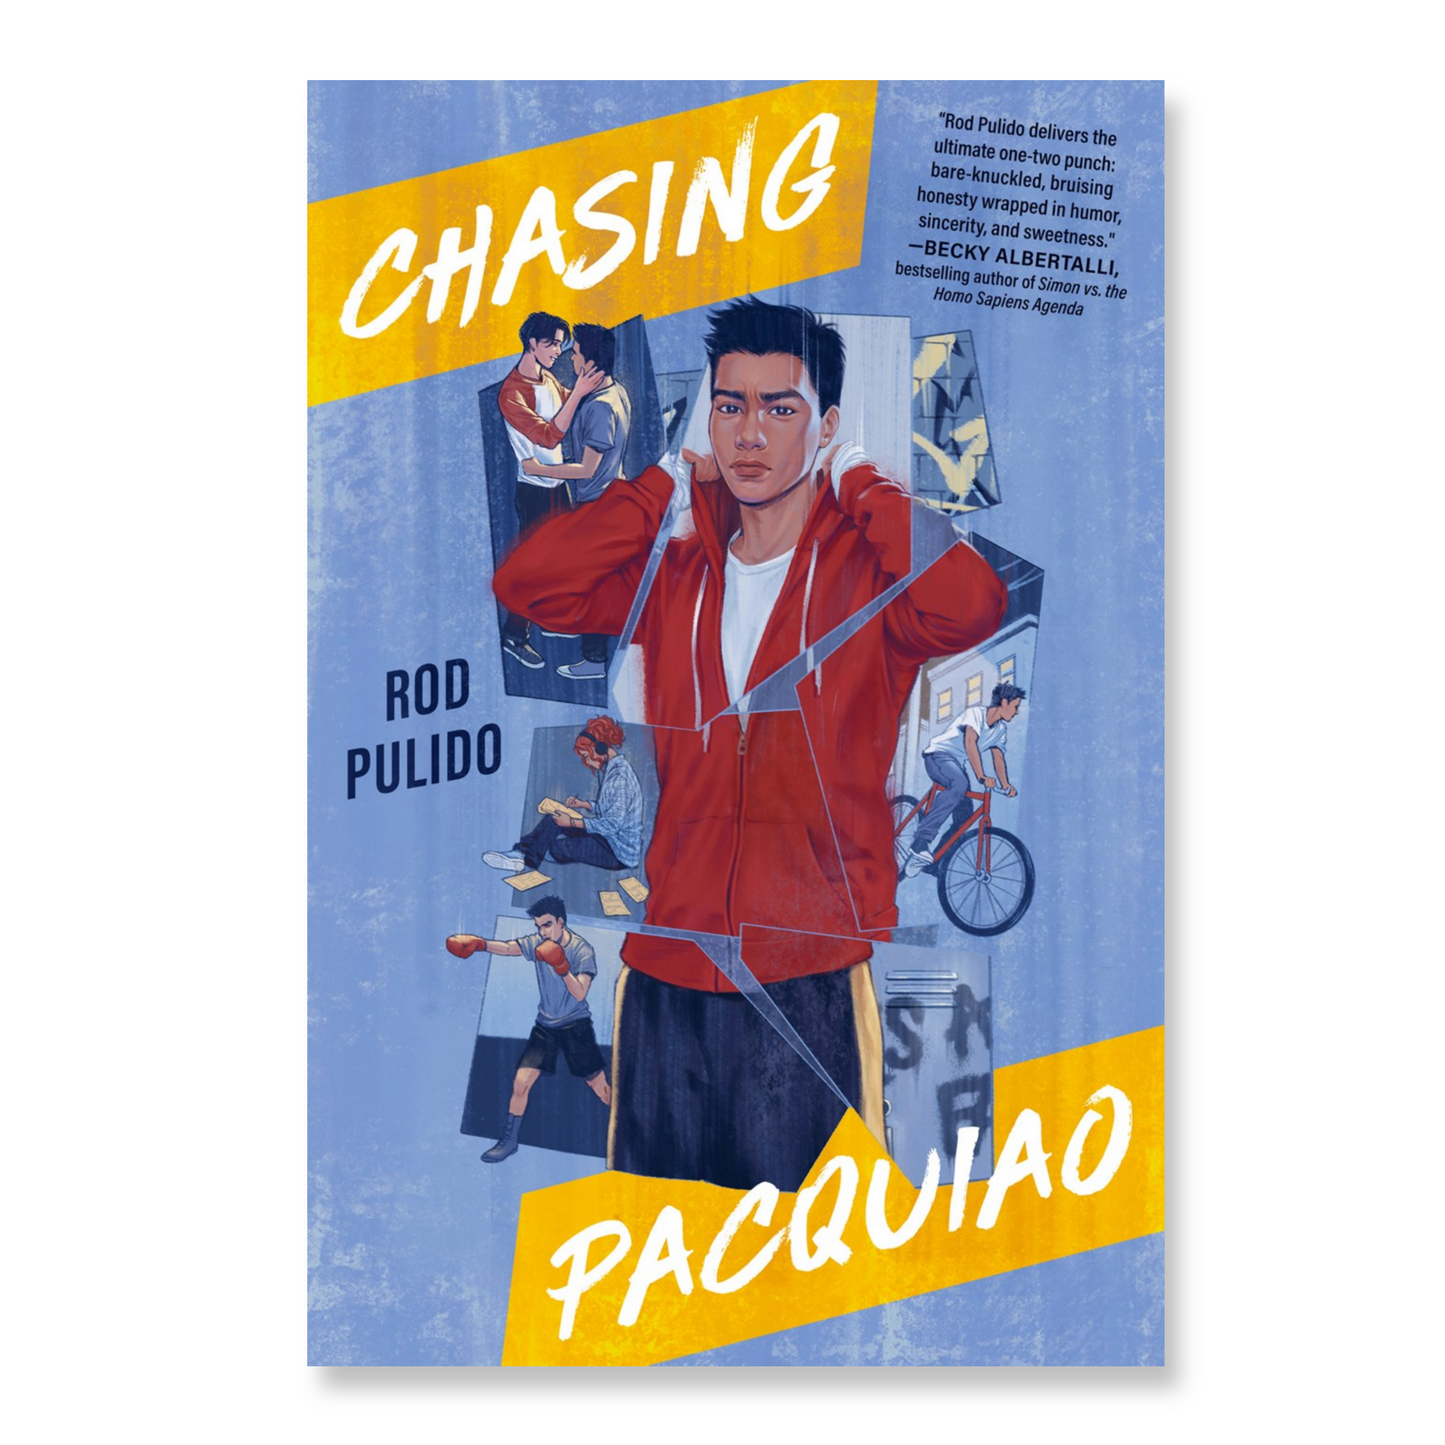 Chasing Pacquiao